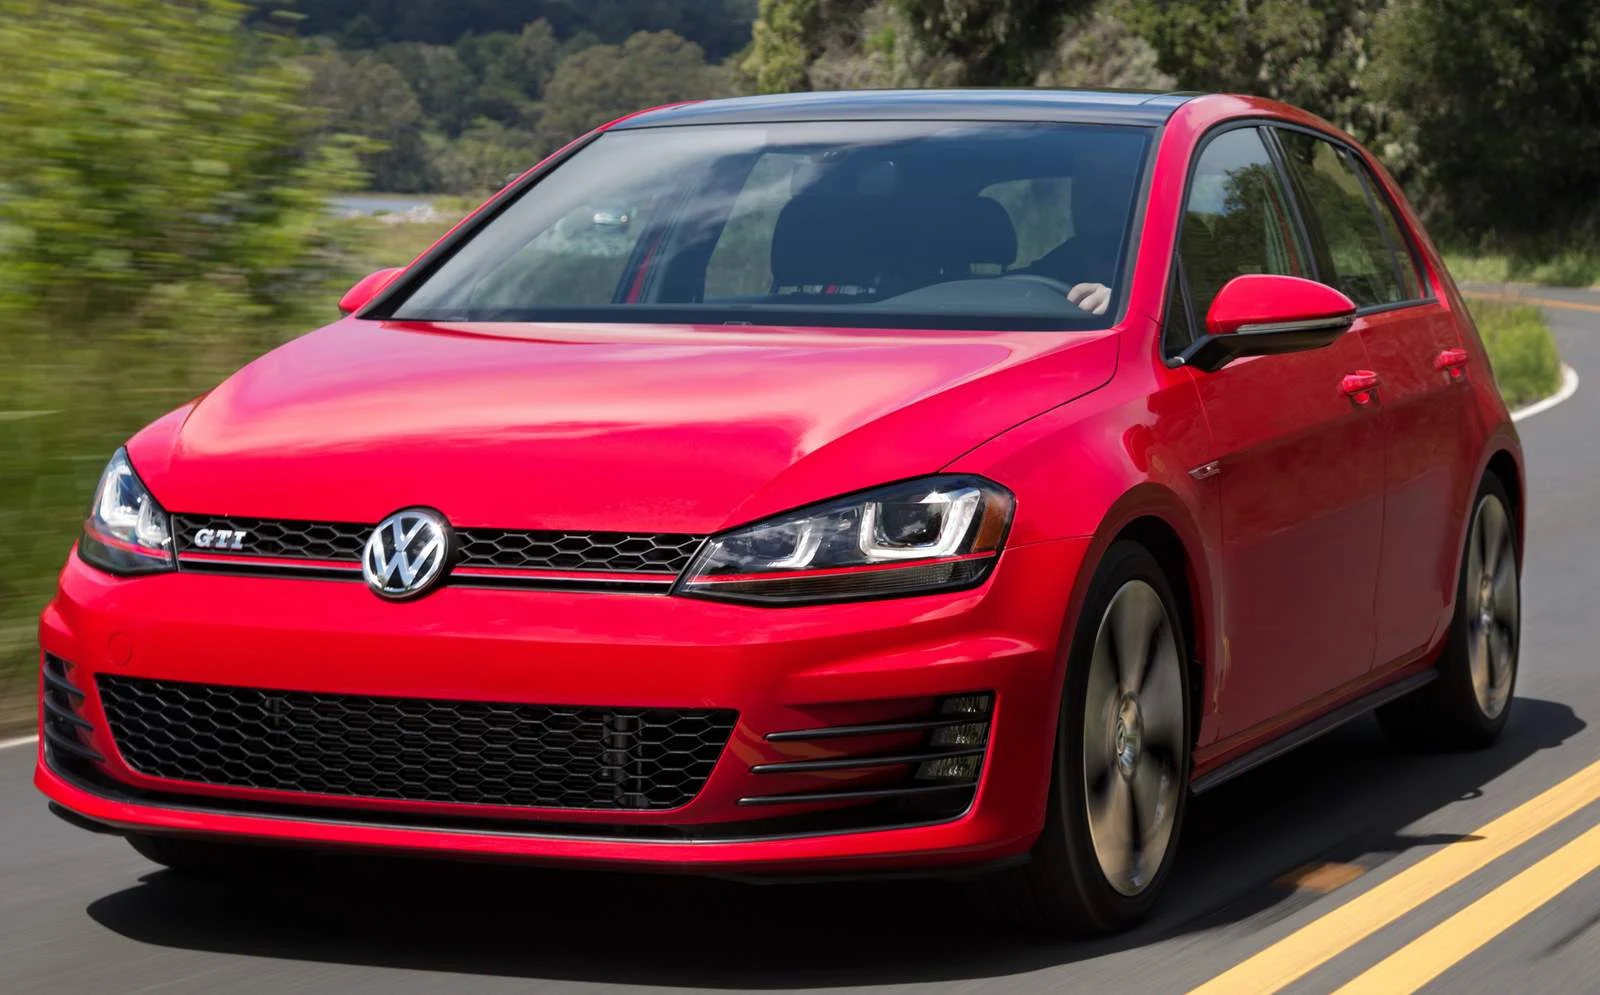 Volkswagen Golf 2015 - USA